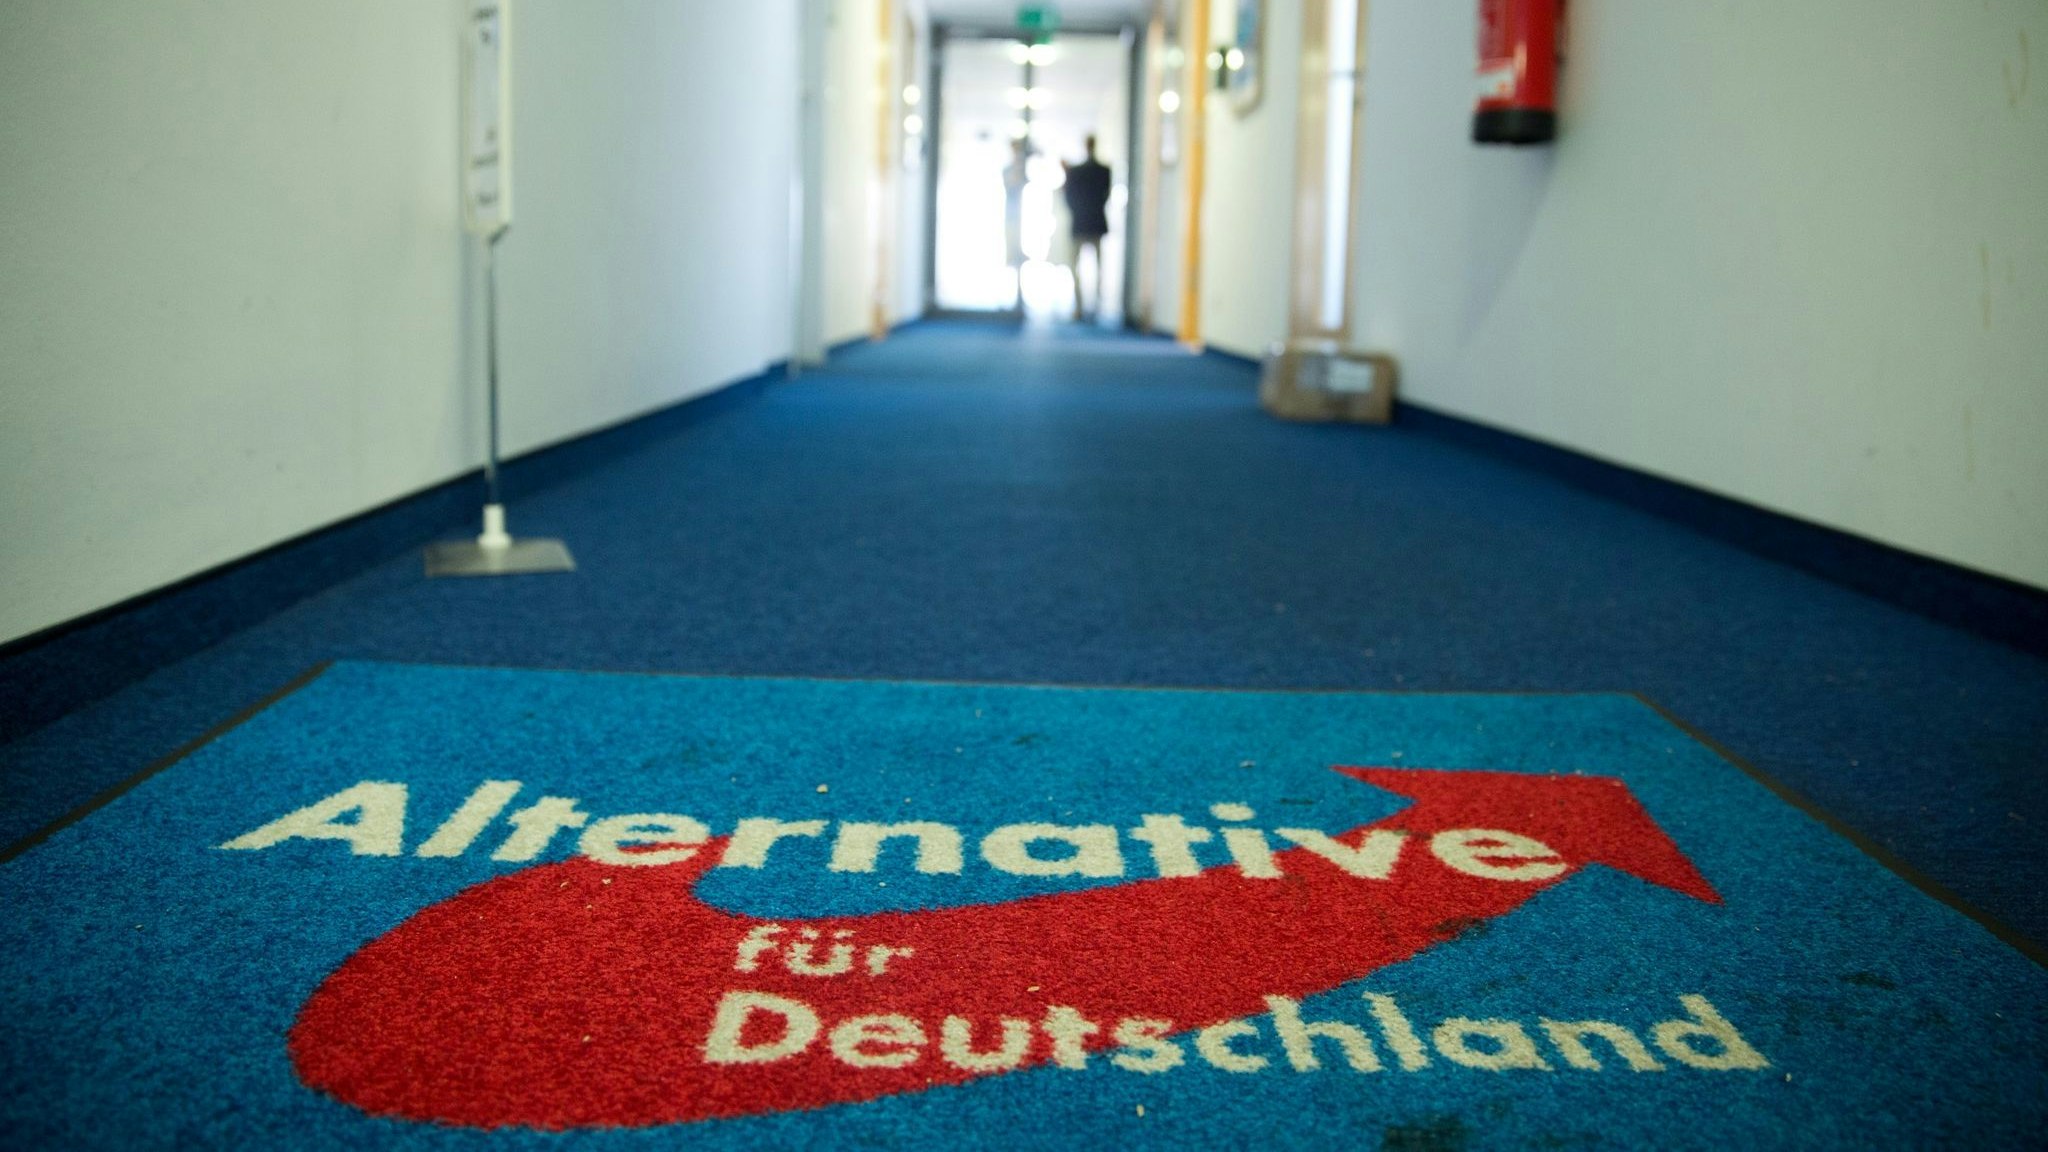 Blick in die Bundesgeschäftsstelle der Alternative für Deutschland (AfD) in Berlin. Foto: dpa